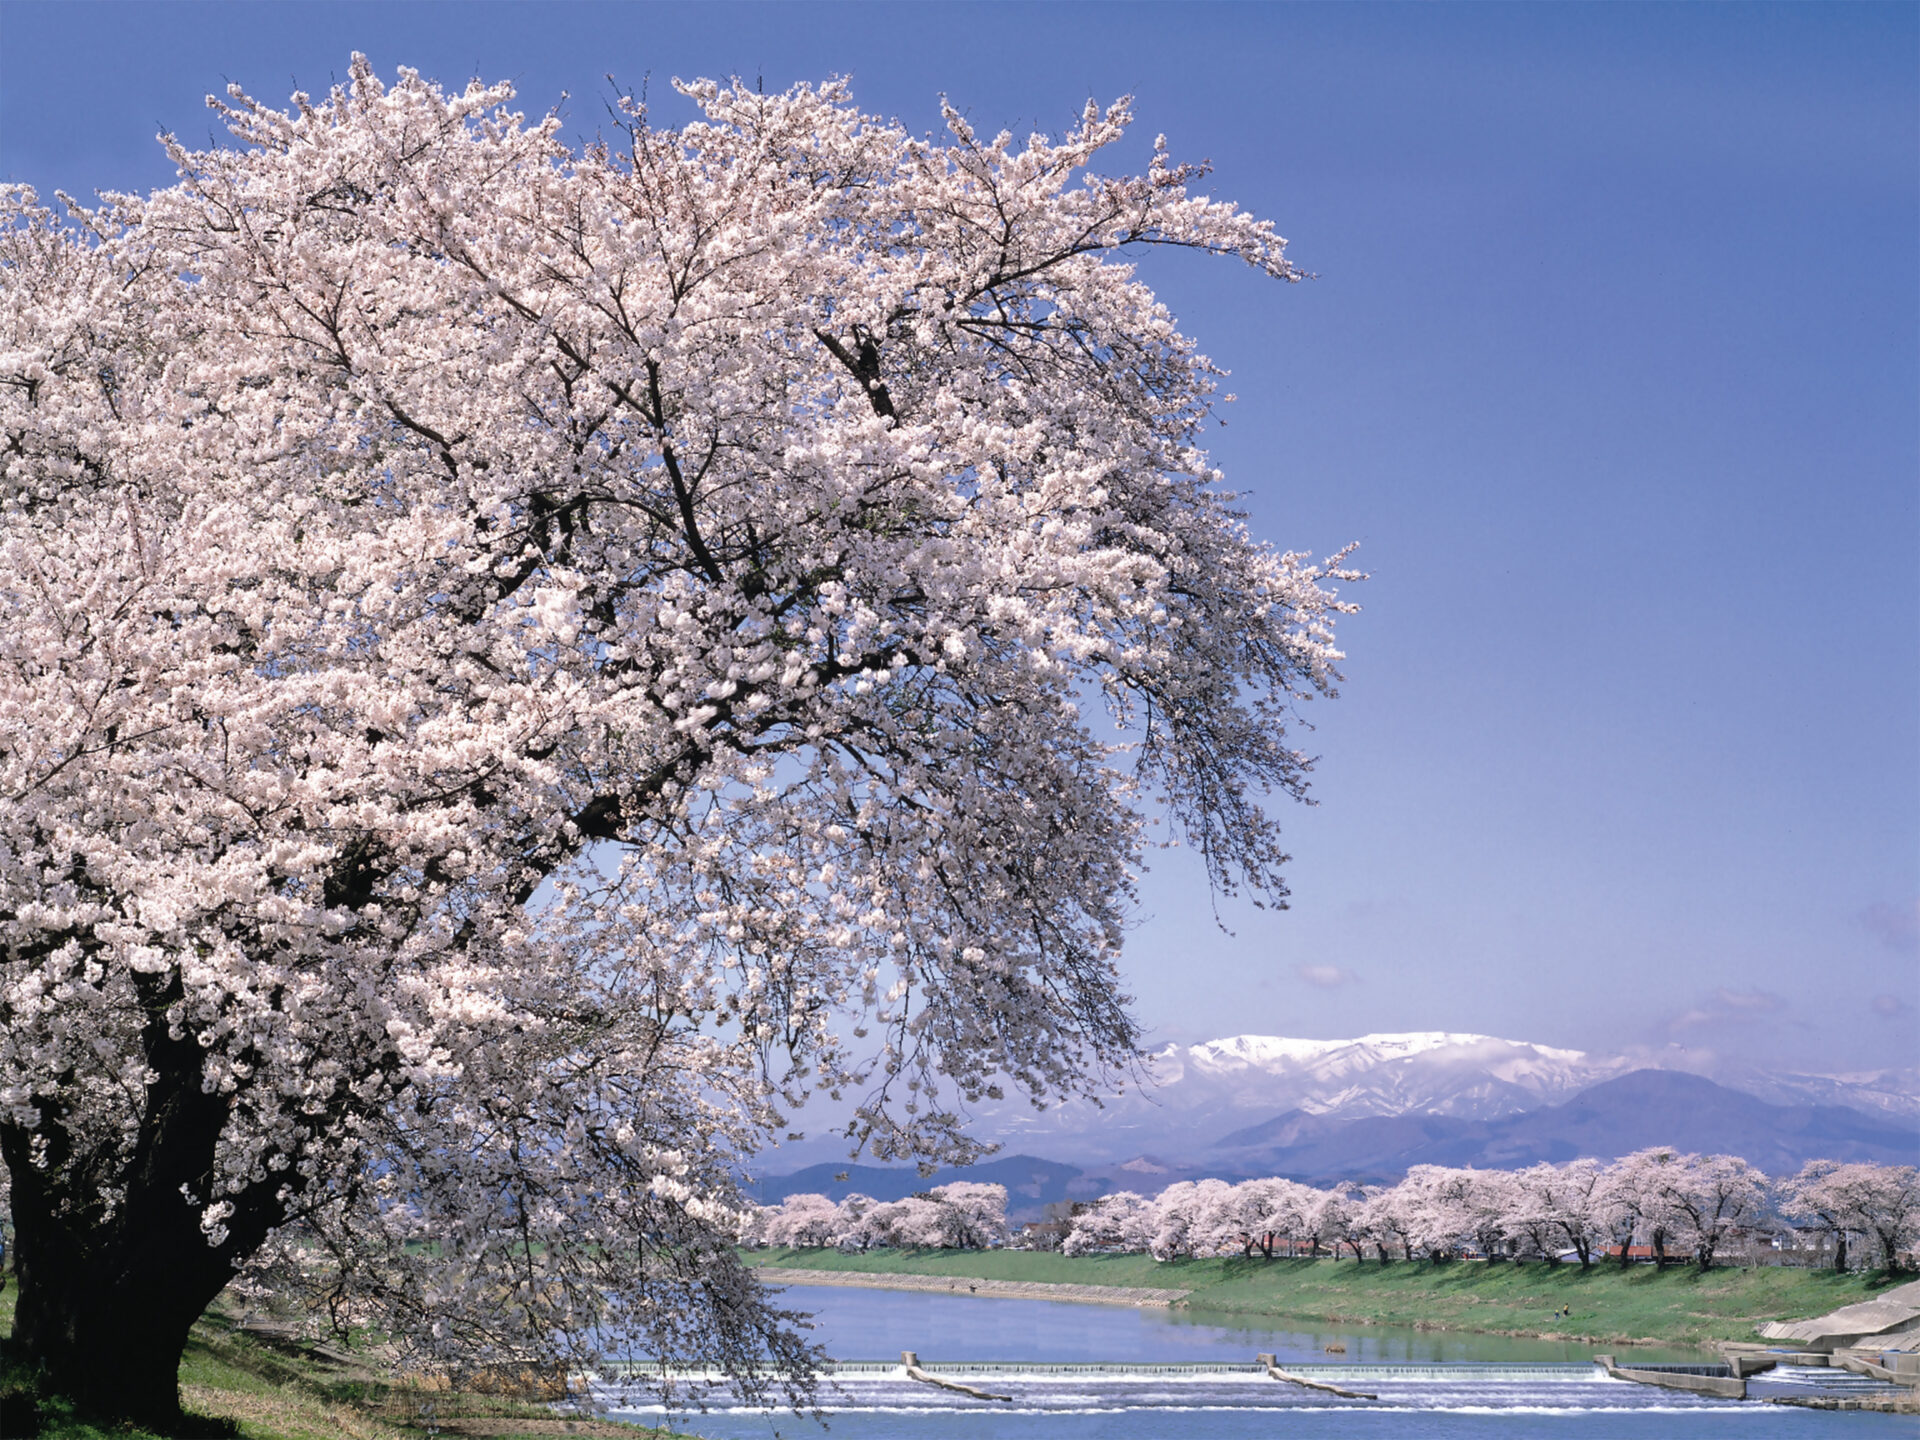 一目千本桜を眼前に、足下に、白石川の清流、遠くに蔵王連峰を望む